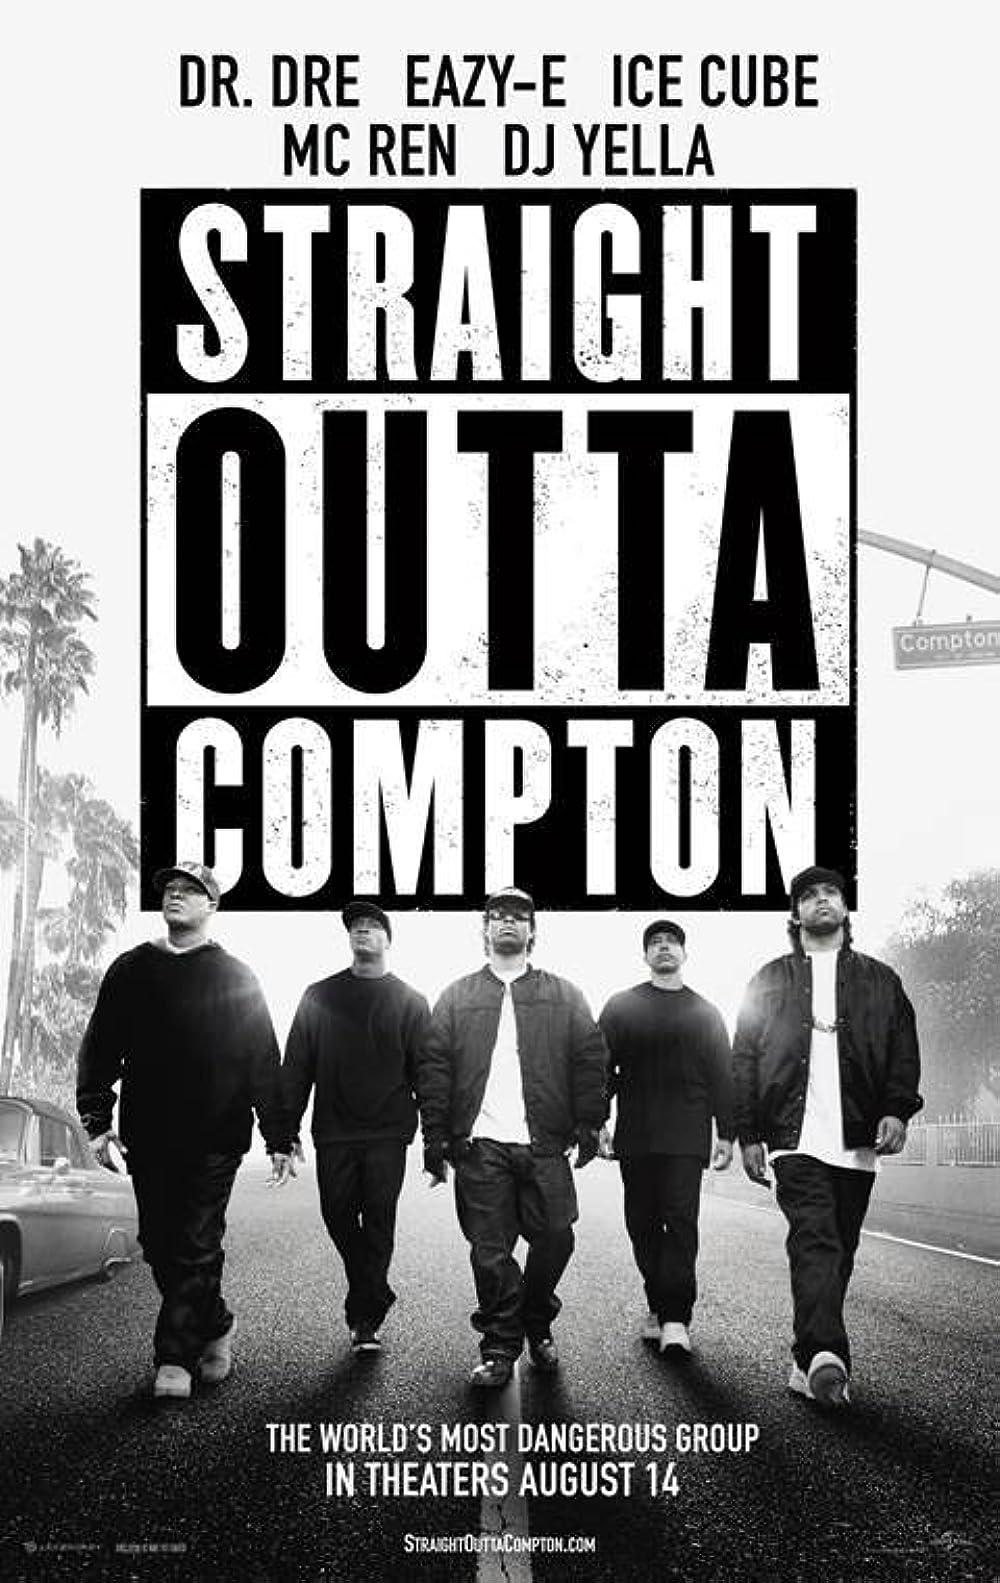 FULL MOVIE: Straight Outta Compton (2015)